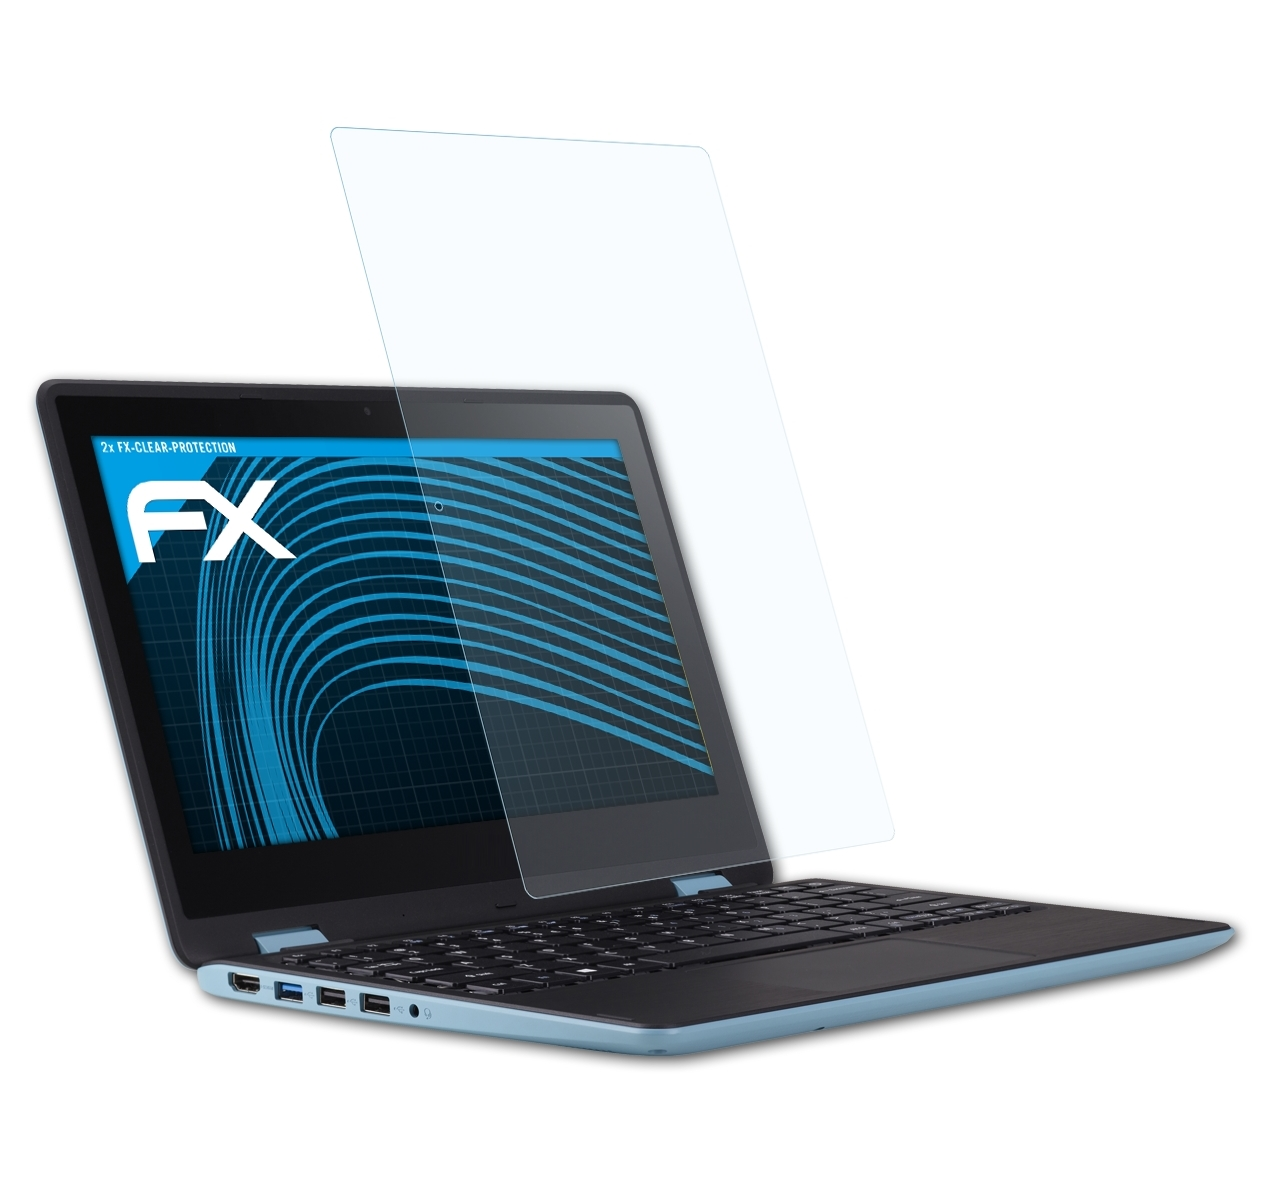 ATFOLIX 2x FX-Clear Displayschutz(für 1 inch)) Acer SP113-31 Spin (13,3